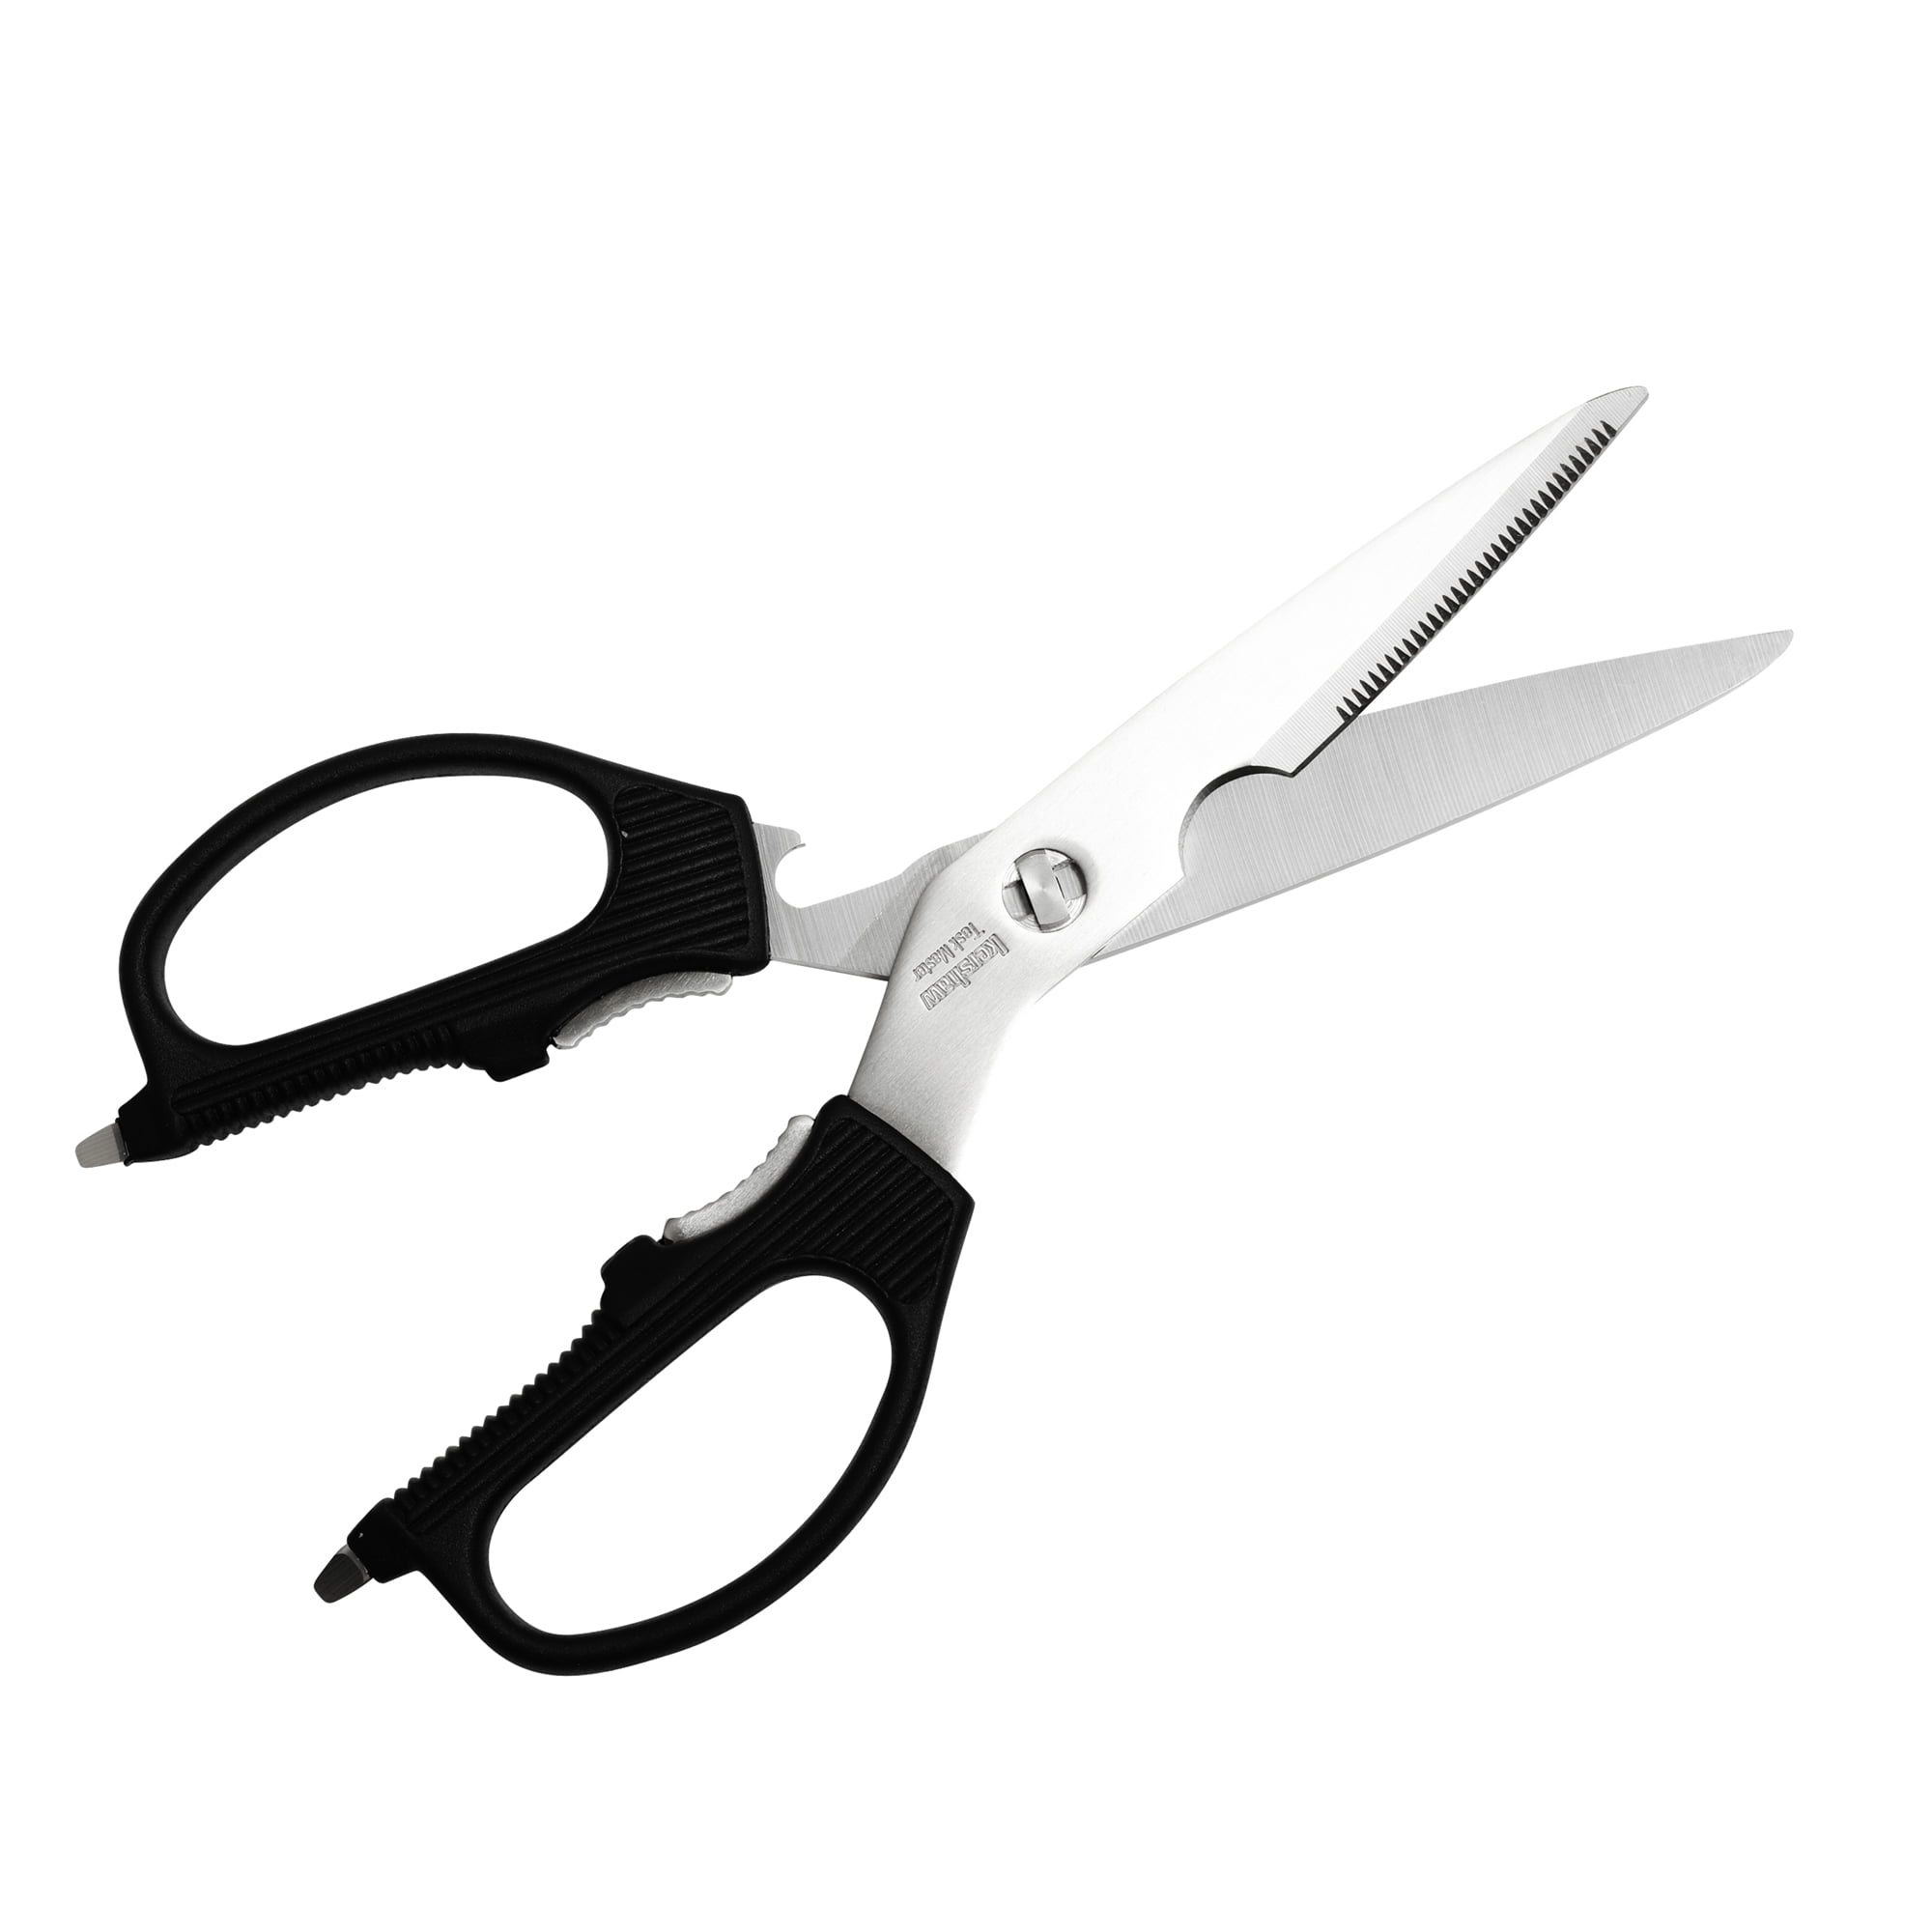 FREE BnR Bead pack PLUS Kershaw scissors & 1yr GLA digital 6